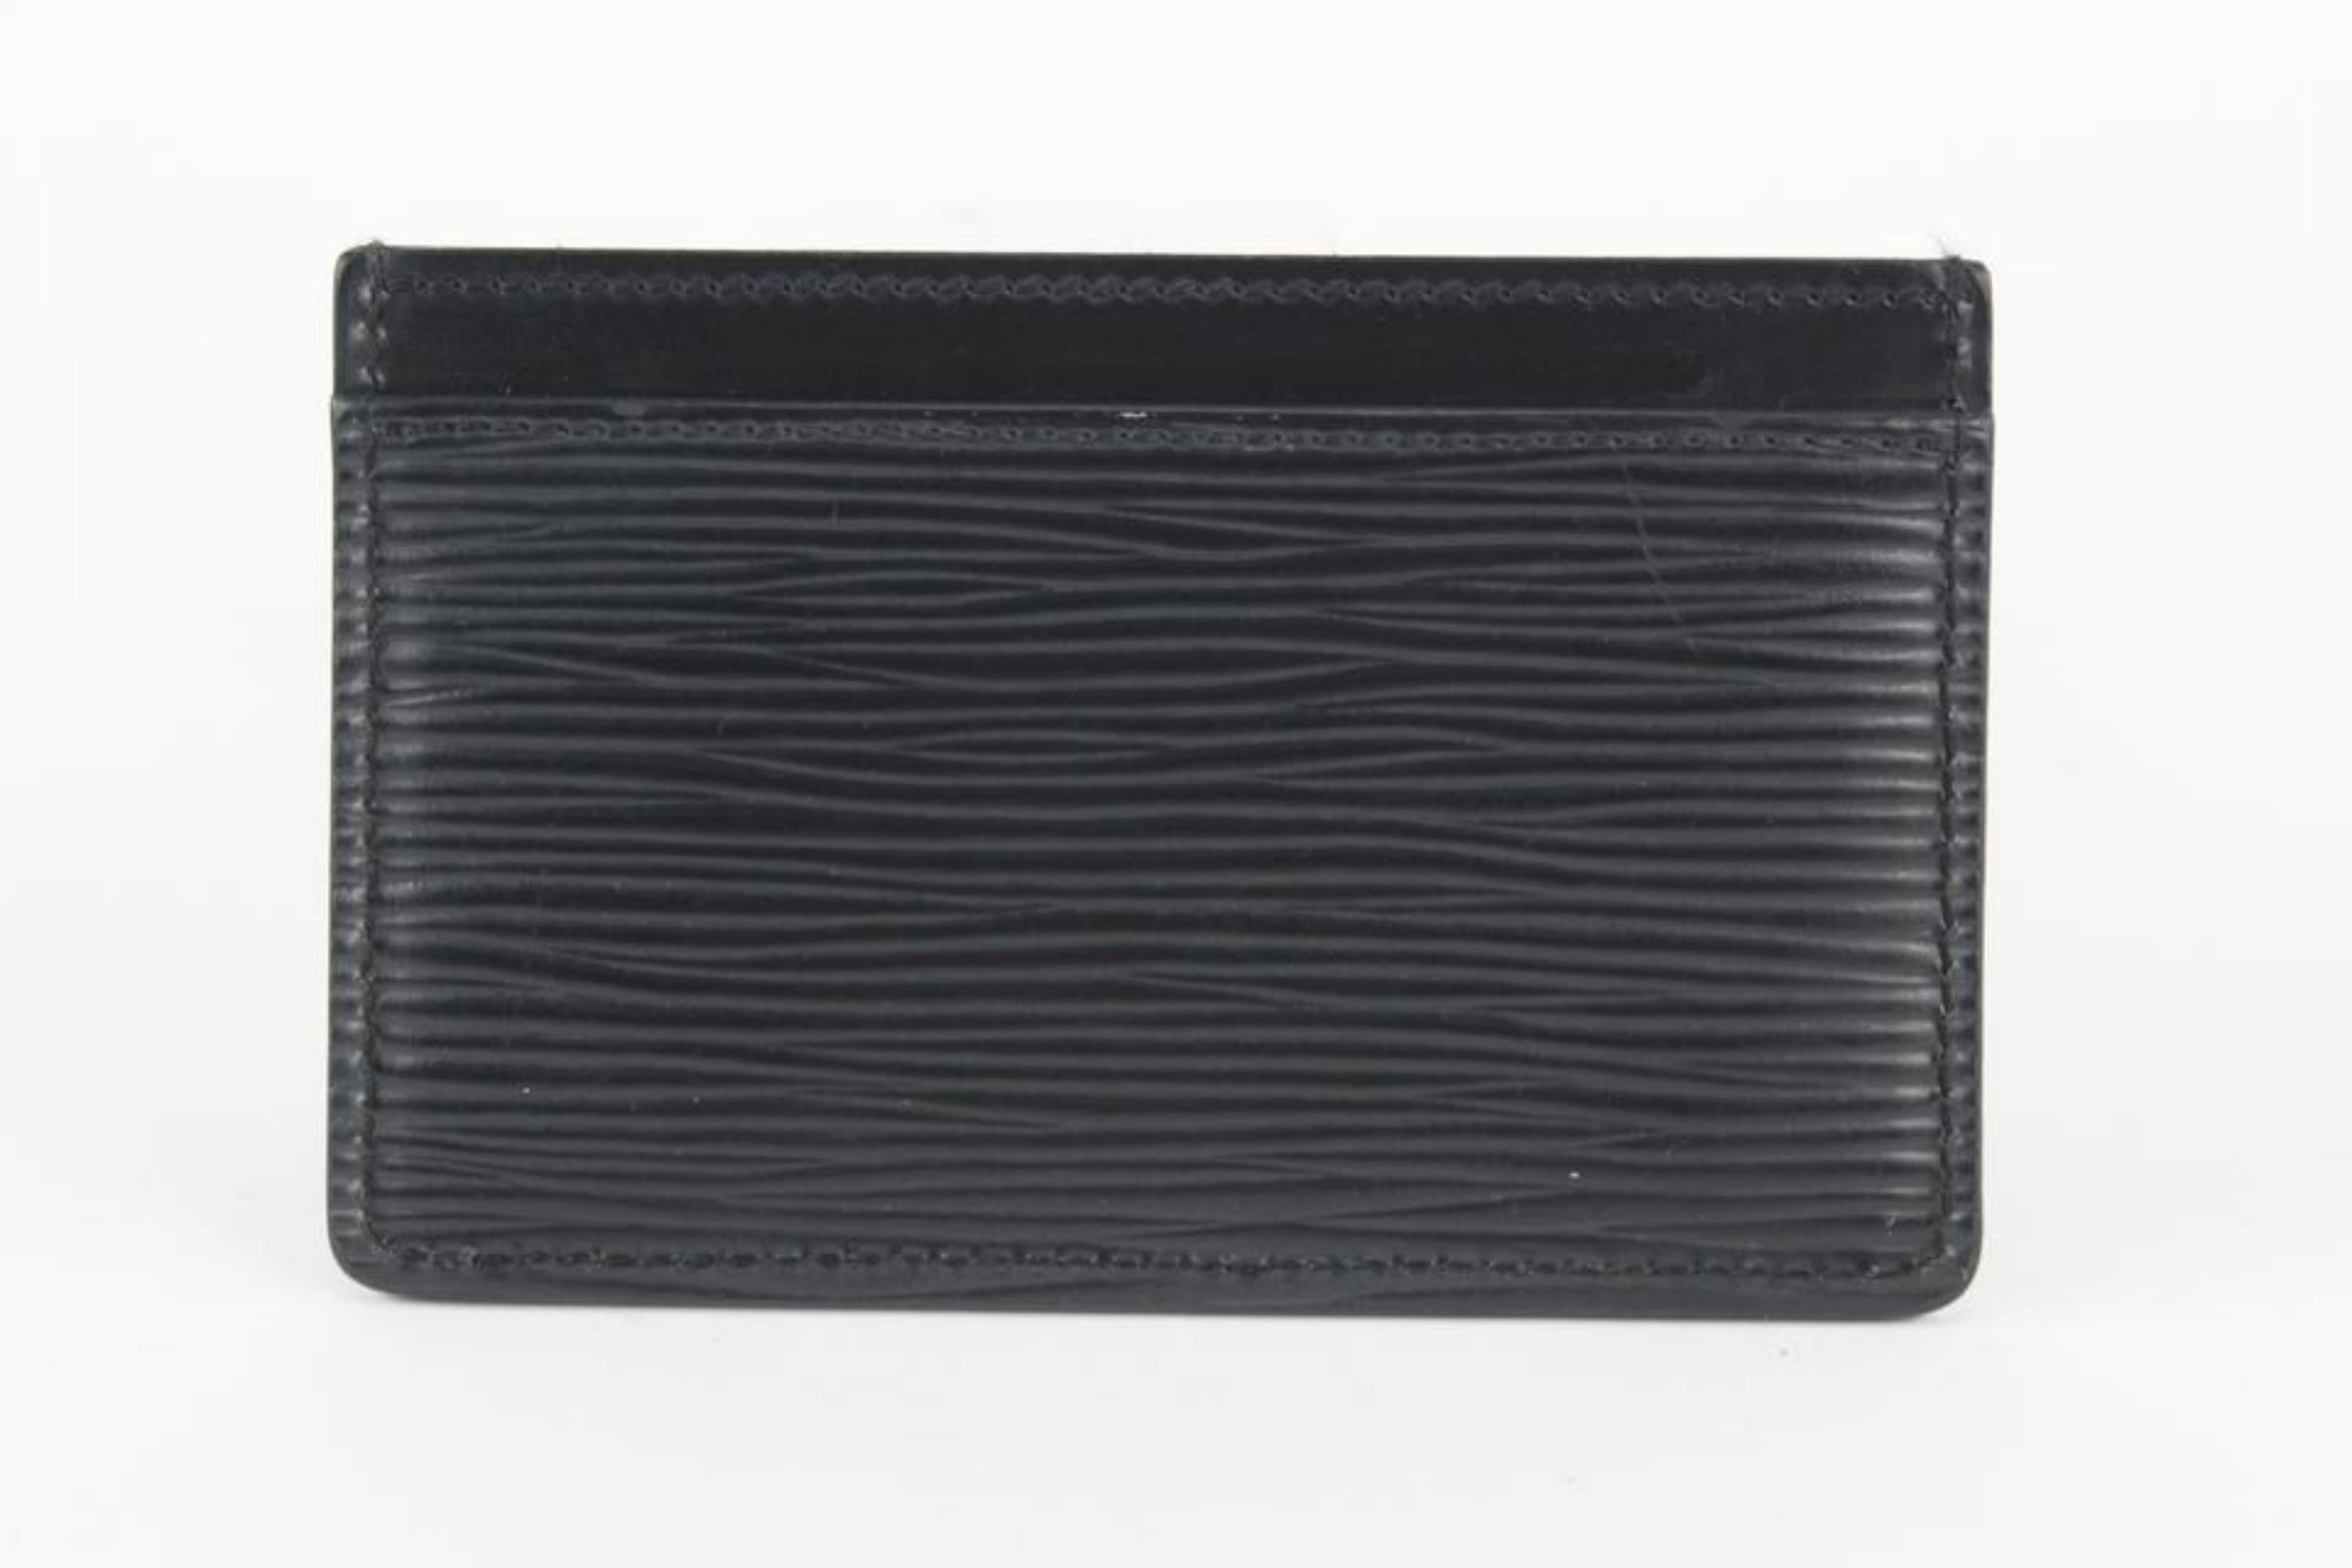 Louis Vuitton Black Epi Leather Noir Card Holder Porte Cartes 1029lv39 4